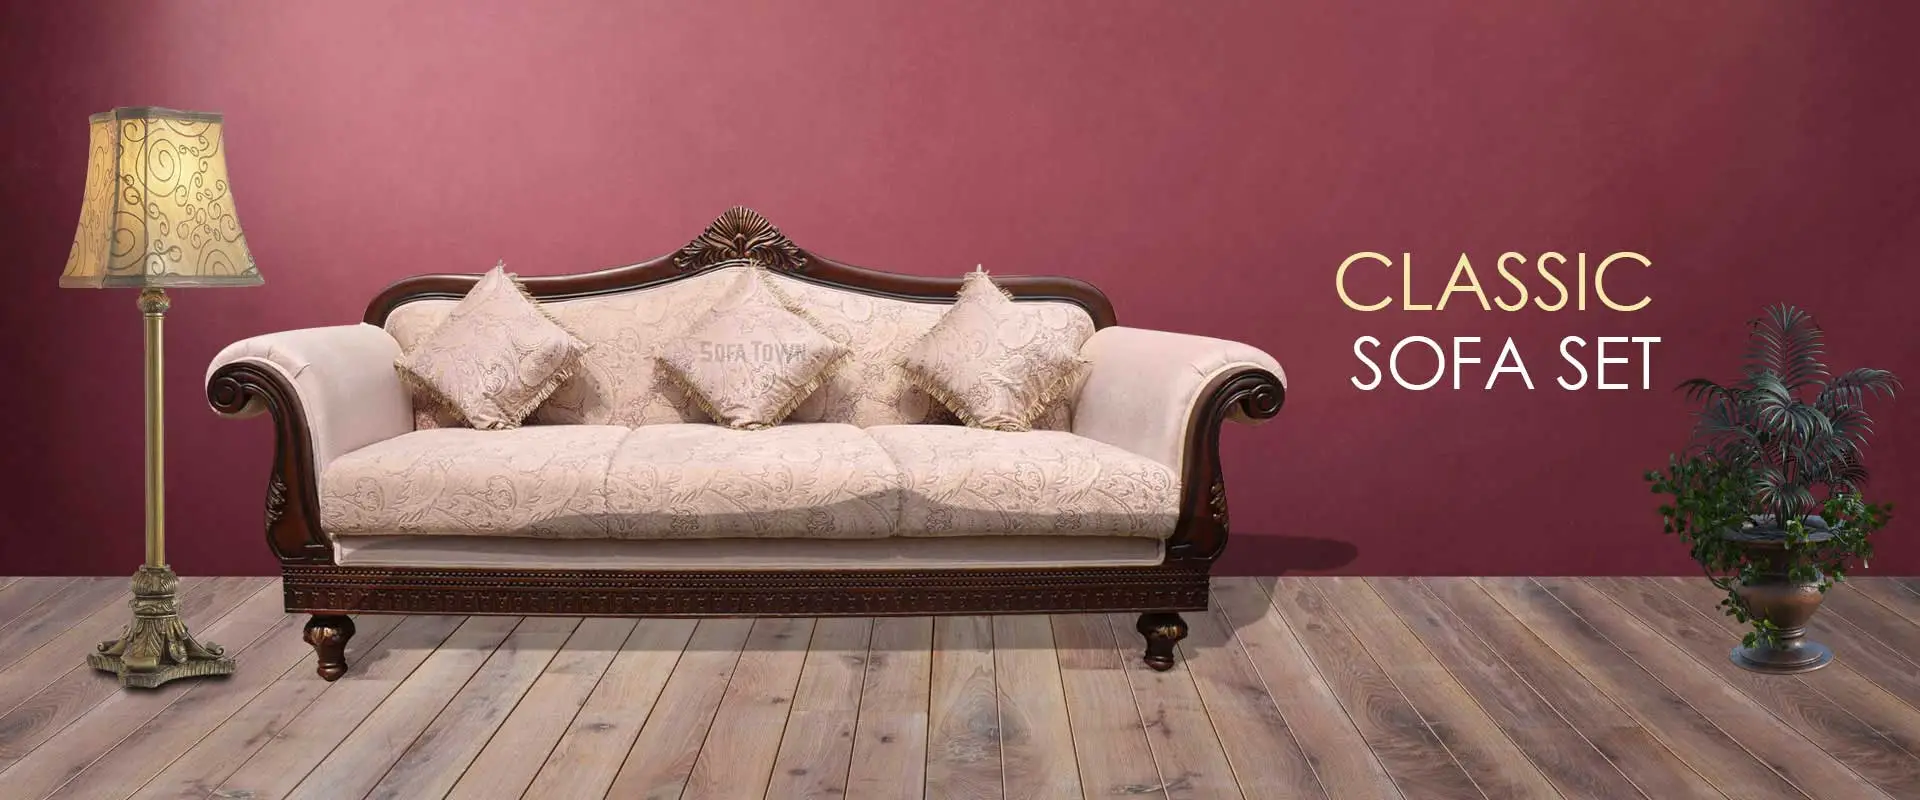 Classic Sofa Set  Manufacturers in Andhra Pradesh